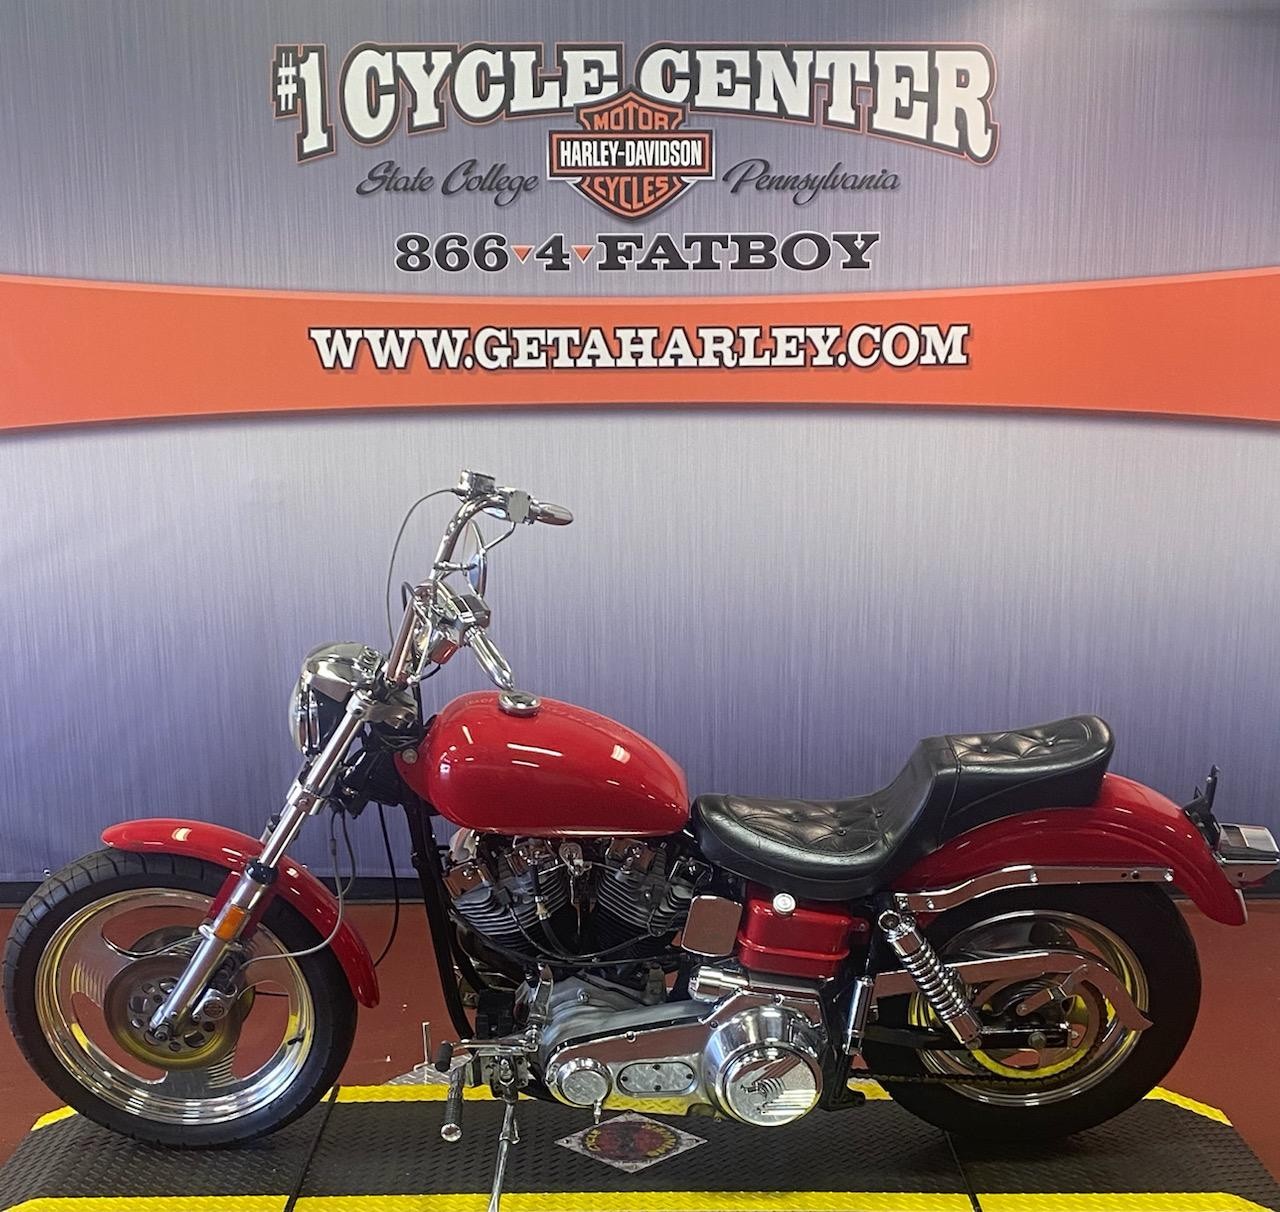 1972 HARLEY FX at #1 Cycle Center Harley-Davidson